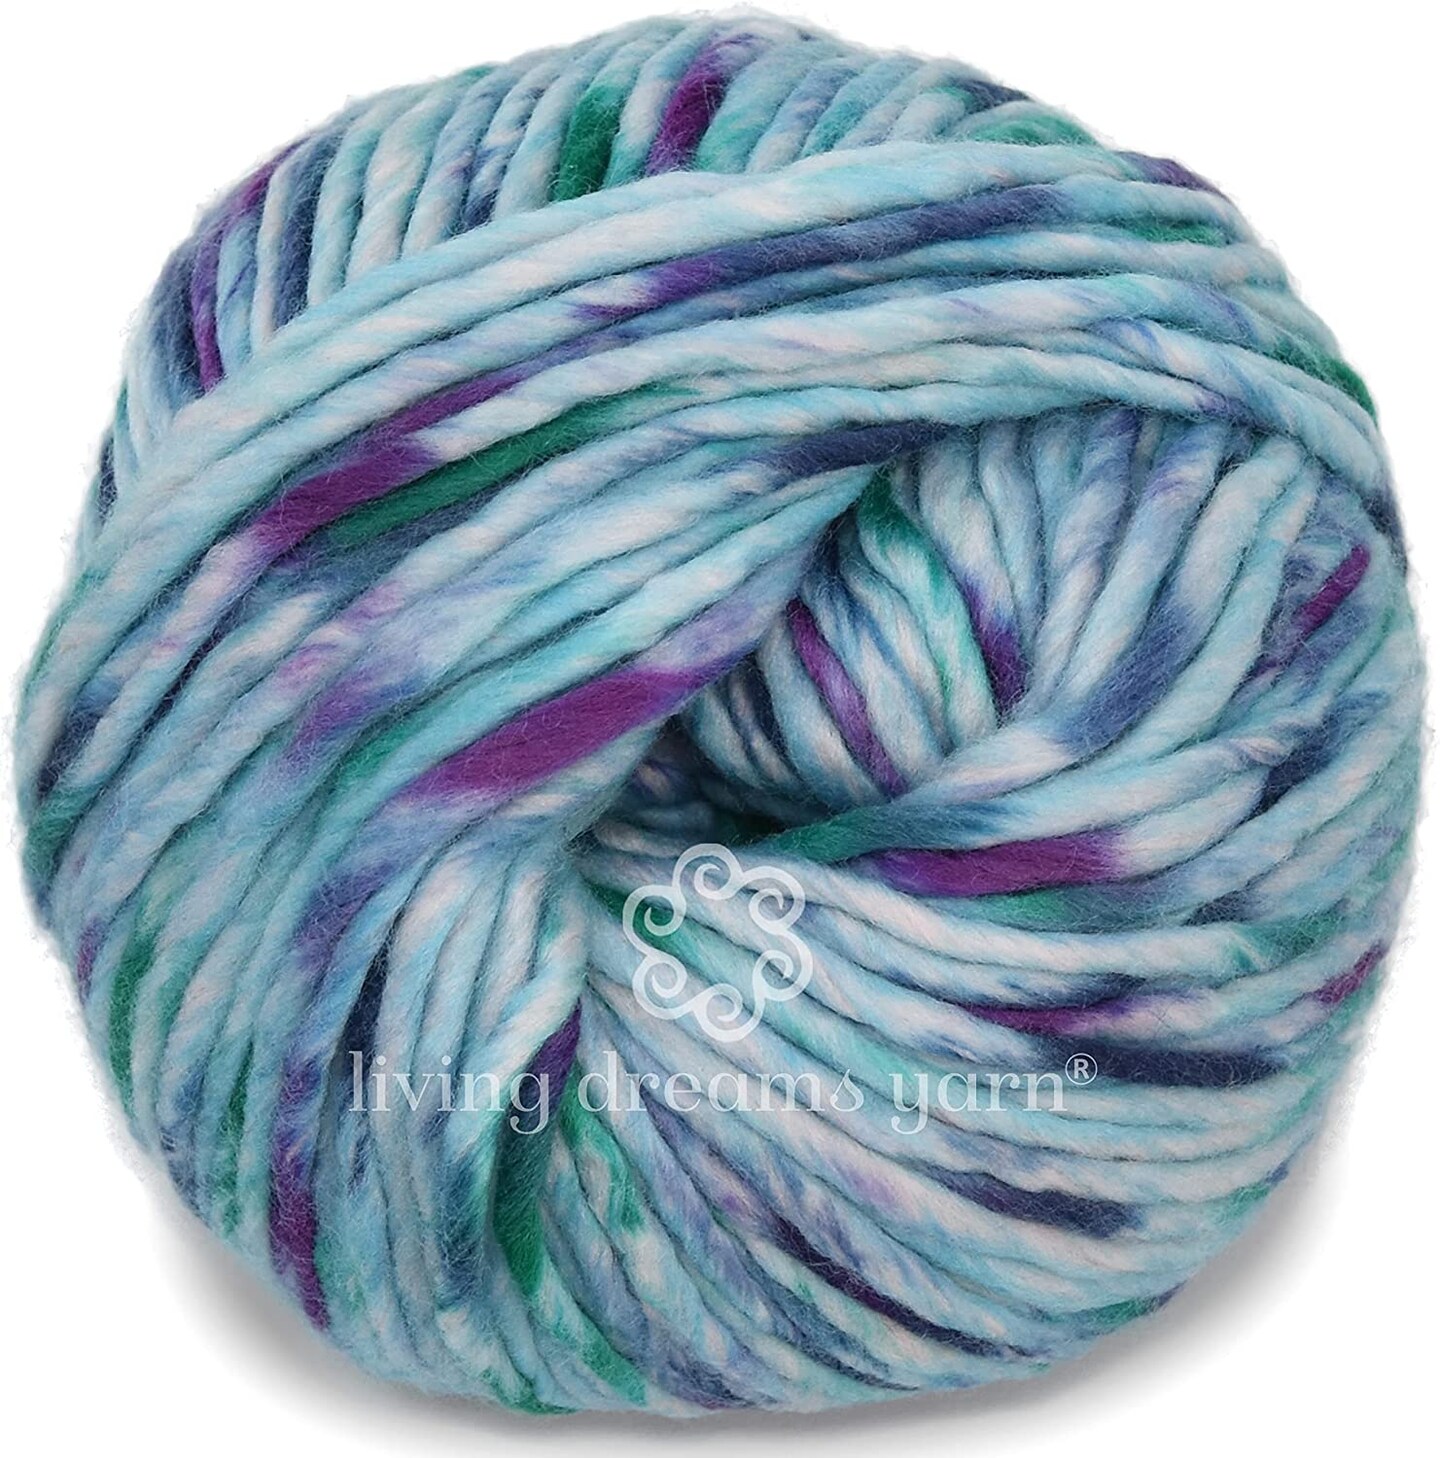 BAE: 100% Extrafine Merino Wool Bulky Weight Roving Yarn. Cuddly